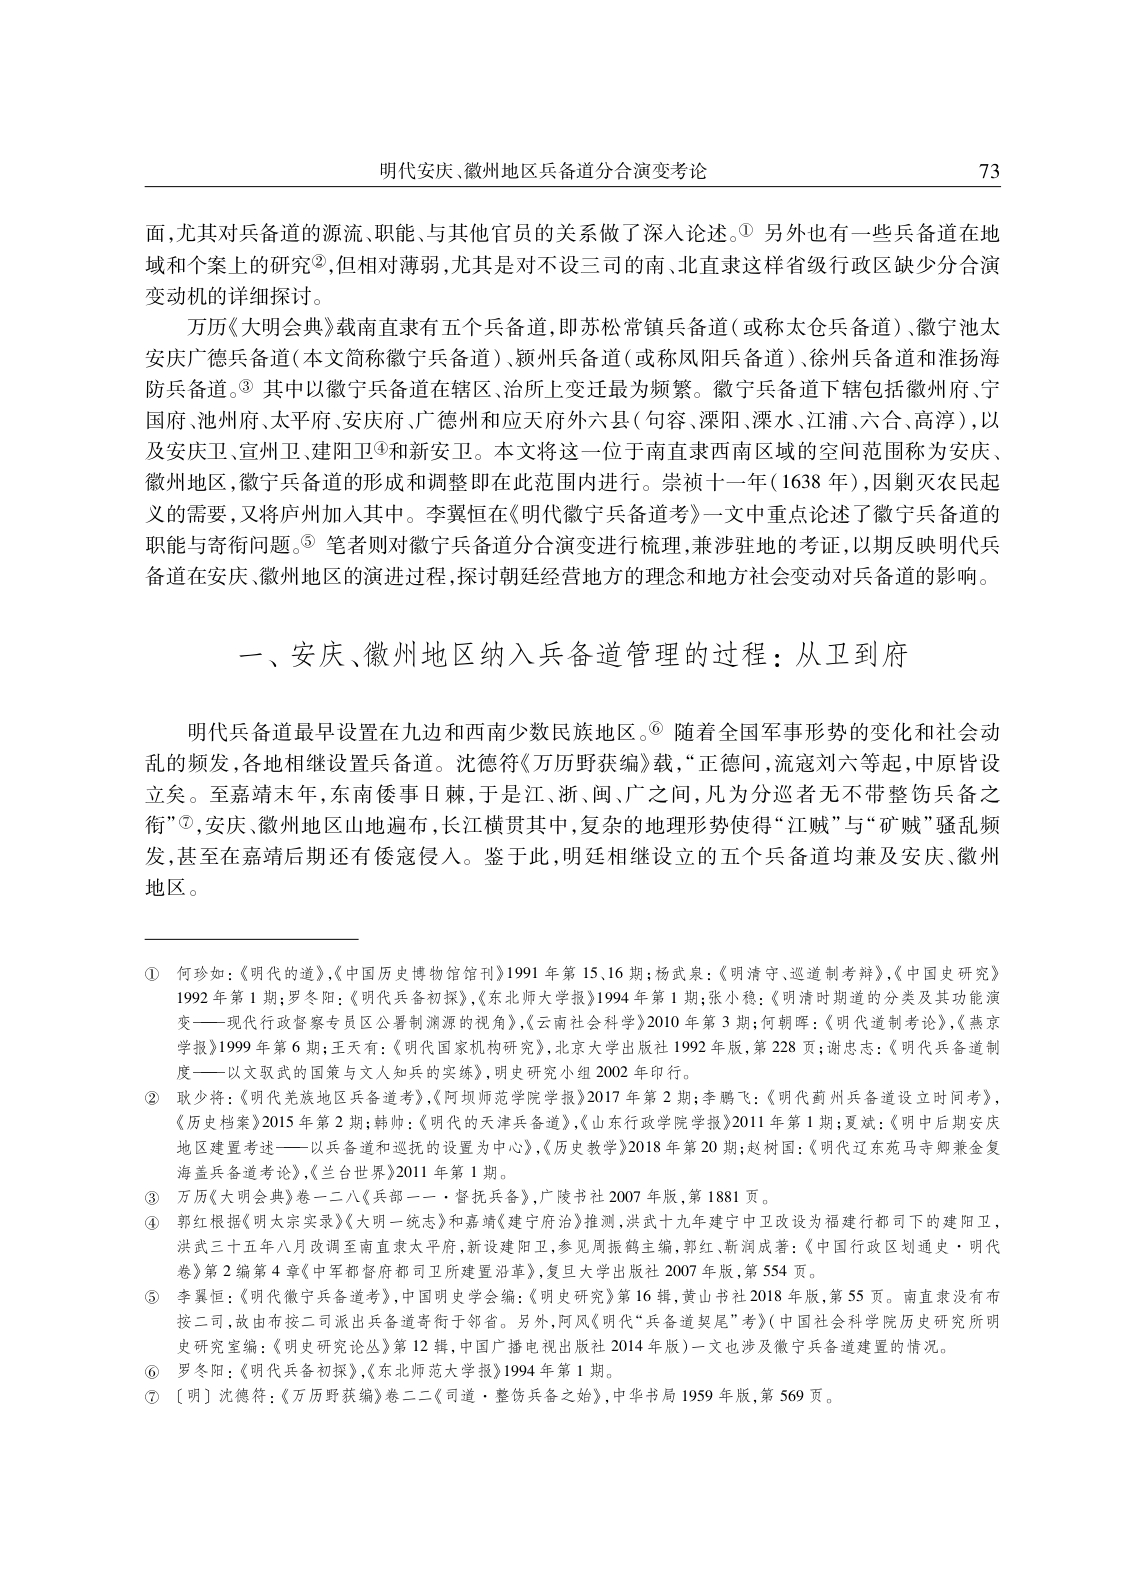 明代安庆、徽州地区兵备道分合演变考论_page-0002.jpg